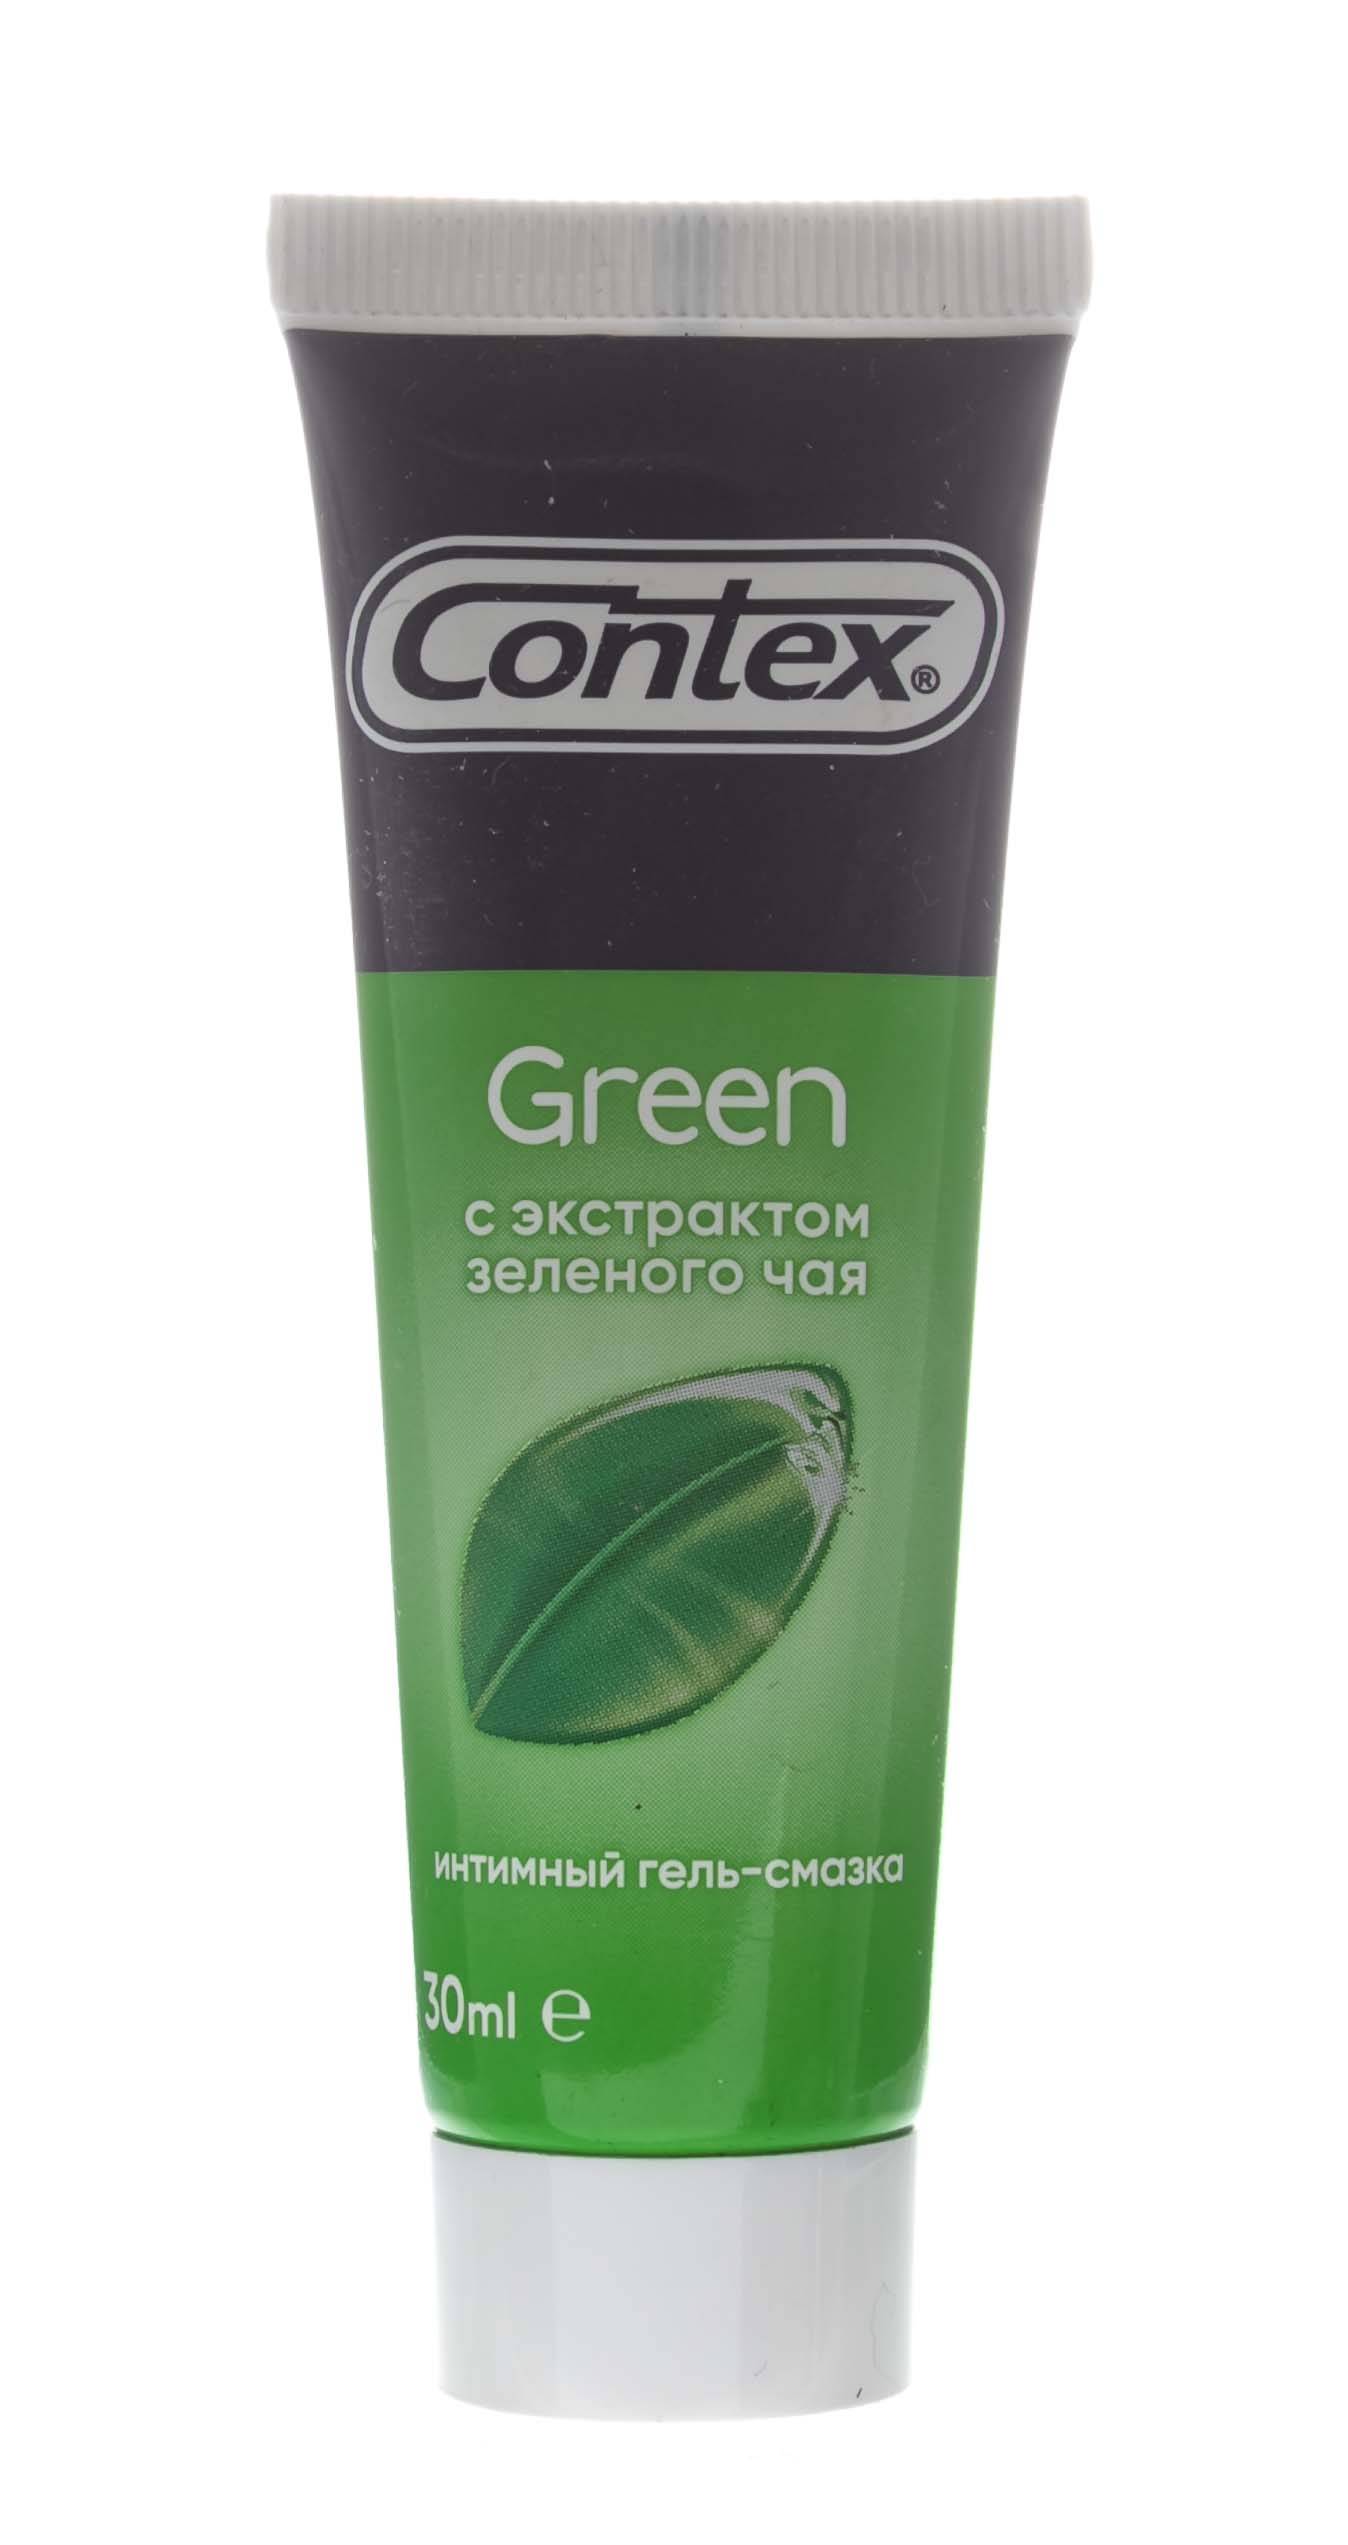 Contex Гель-смазка Green, 30 мл (Contex, Гель-смазка)